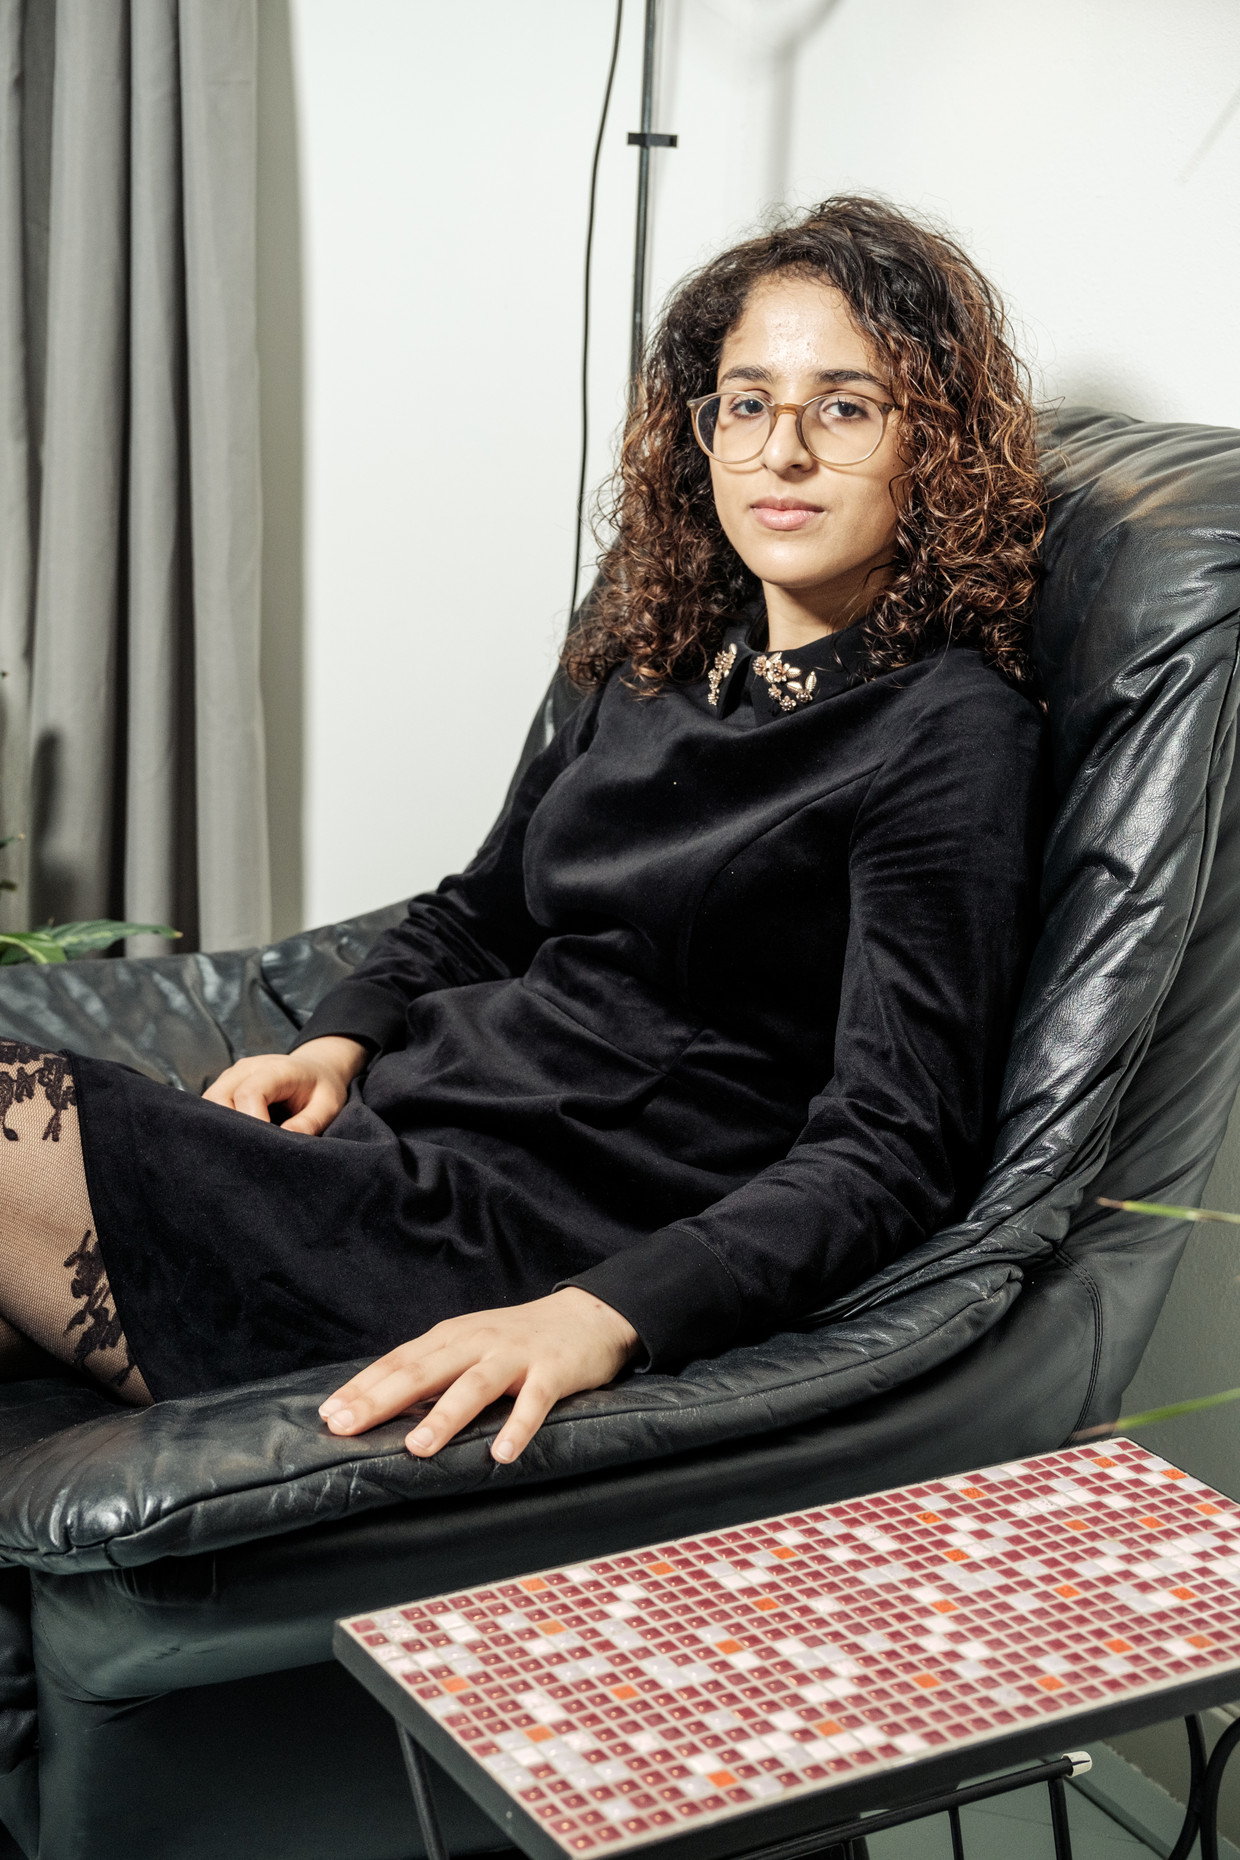 Salima Laghmiri is 2550 euro lichter door de Airbnb-oplichtster - en heeft nog steeds geen nieuw huis in Amsterdam gevonden. Beeld Jakob van Vliet